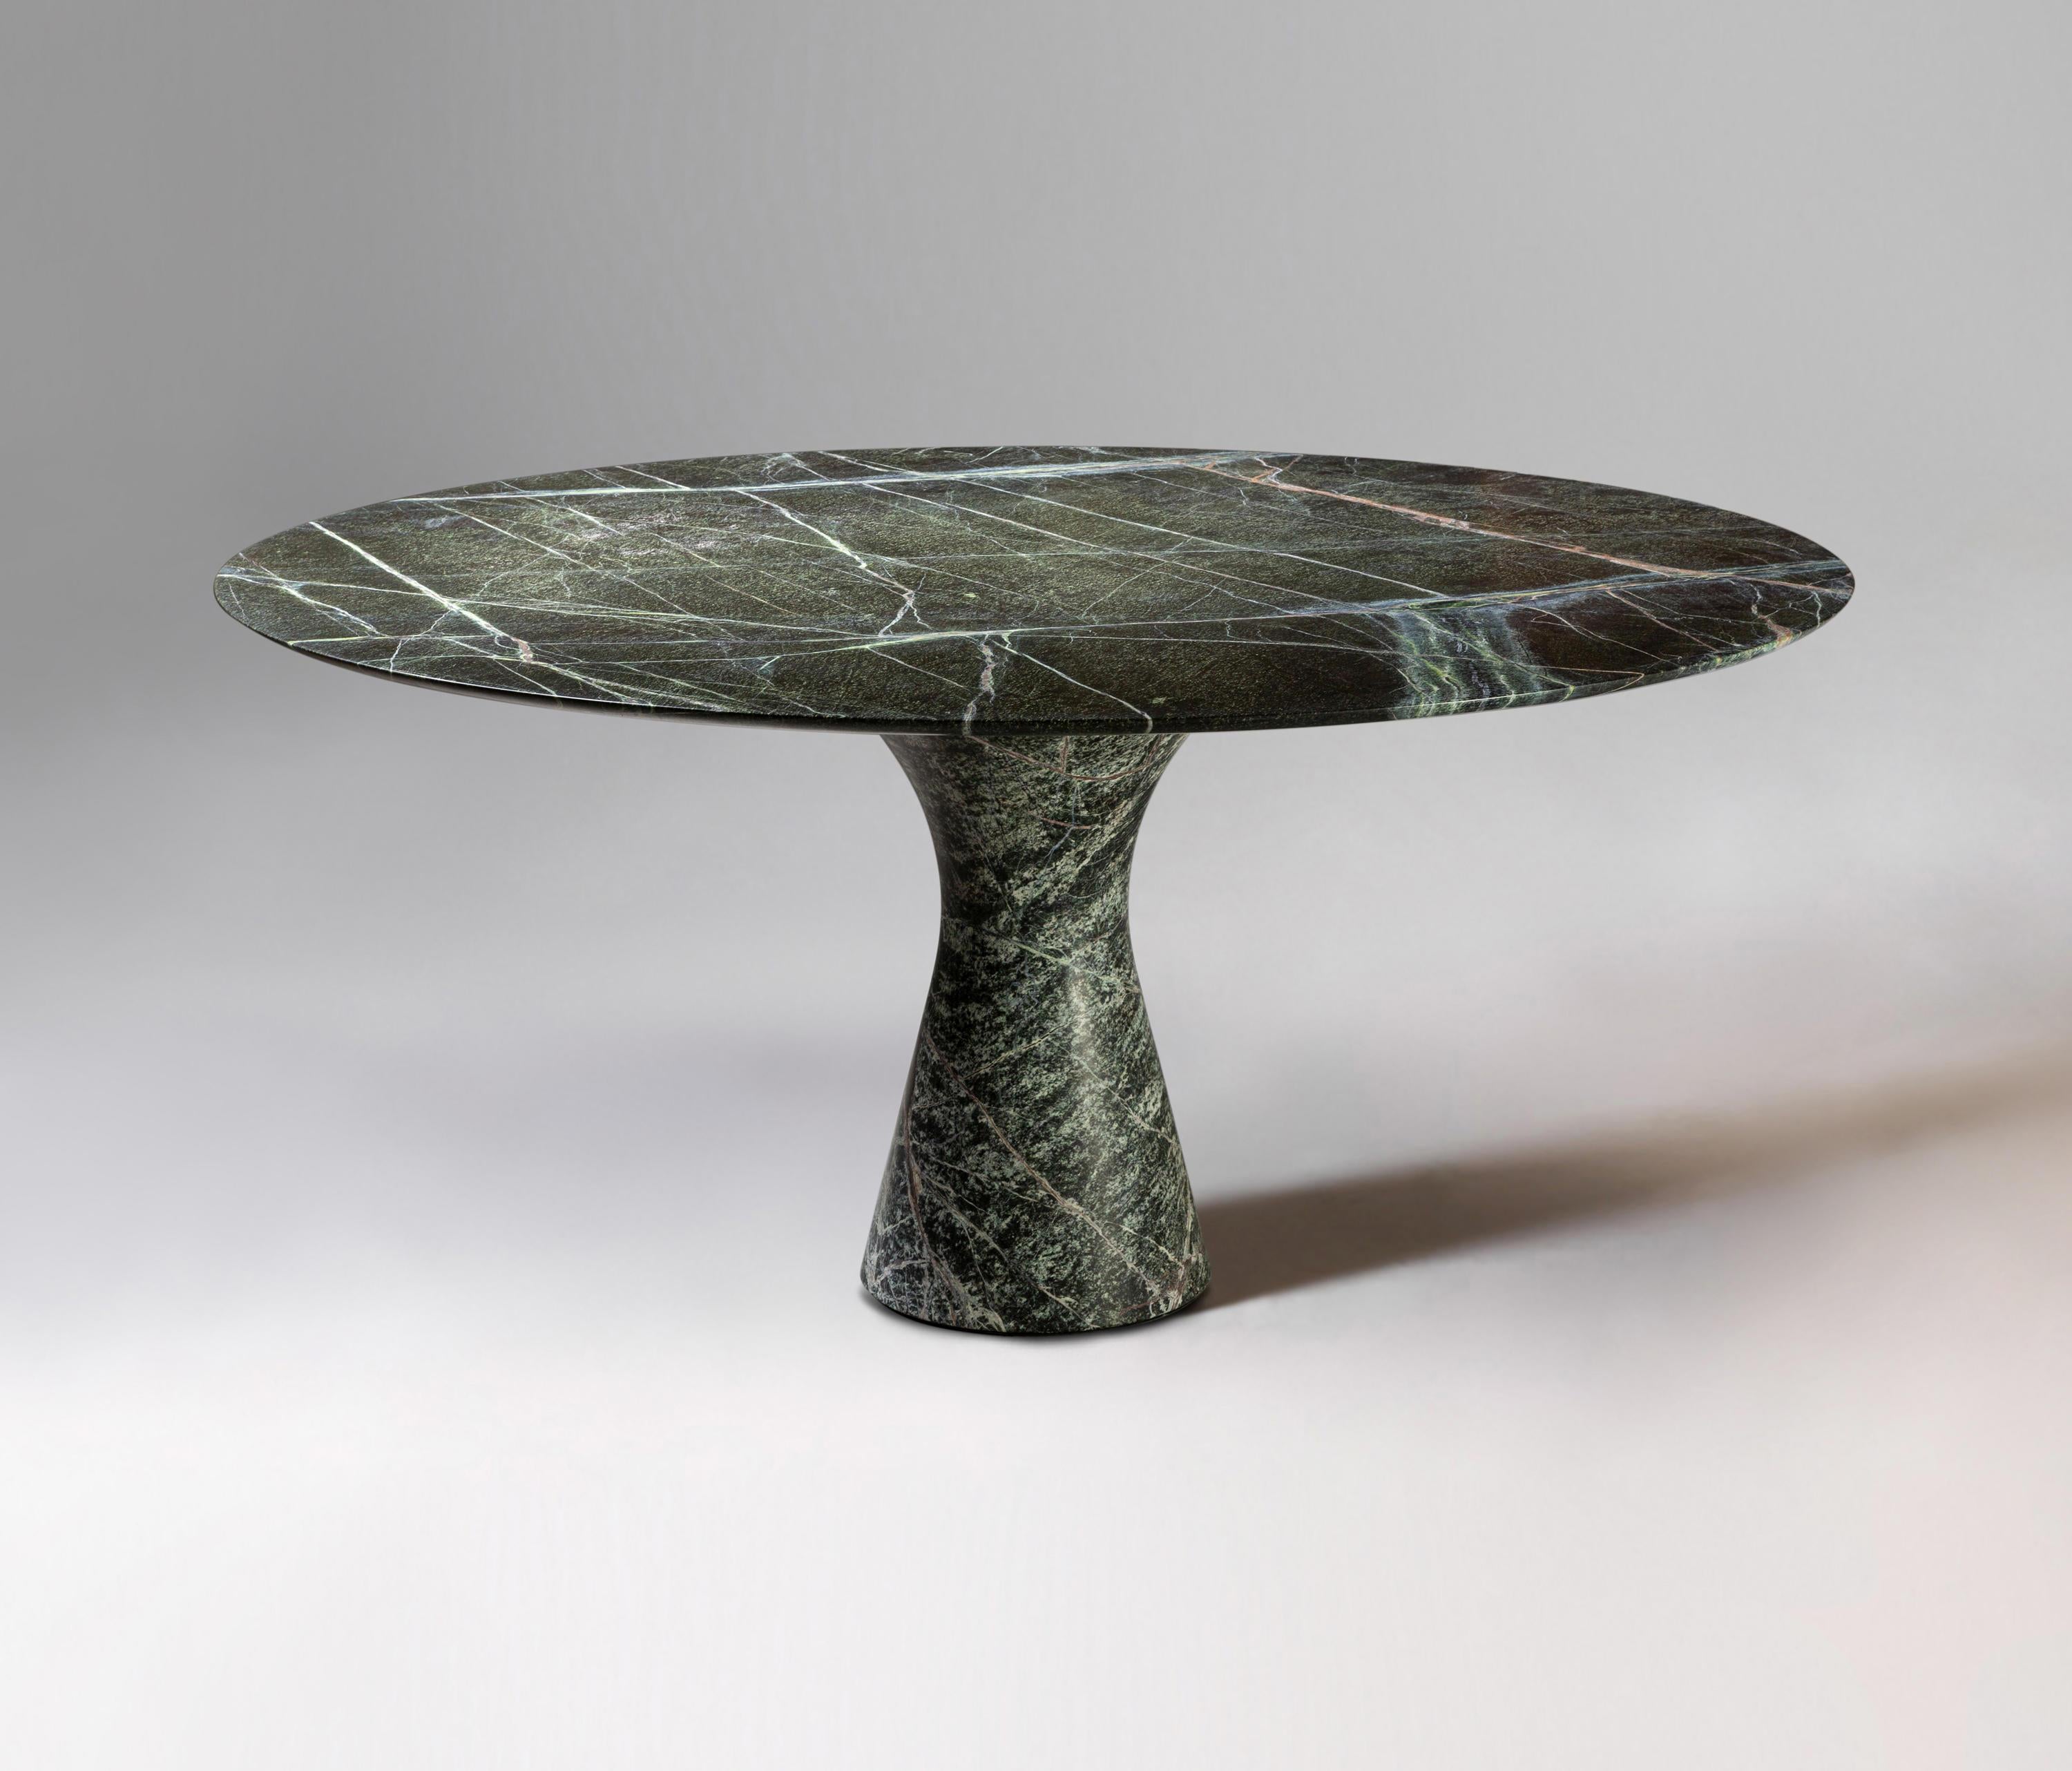 Table de salle à manger en marbre contemporain raffiné vert Picasso 180/75
Dimensions : 180 x 75 cm
MATERIAL : Vert Picasso

Angelo est l'essence même d'une table ronde en pierre naturelle, une forme sculpturale dans un matériau robuste aux